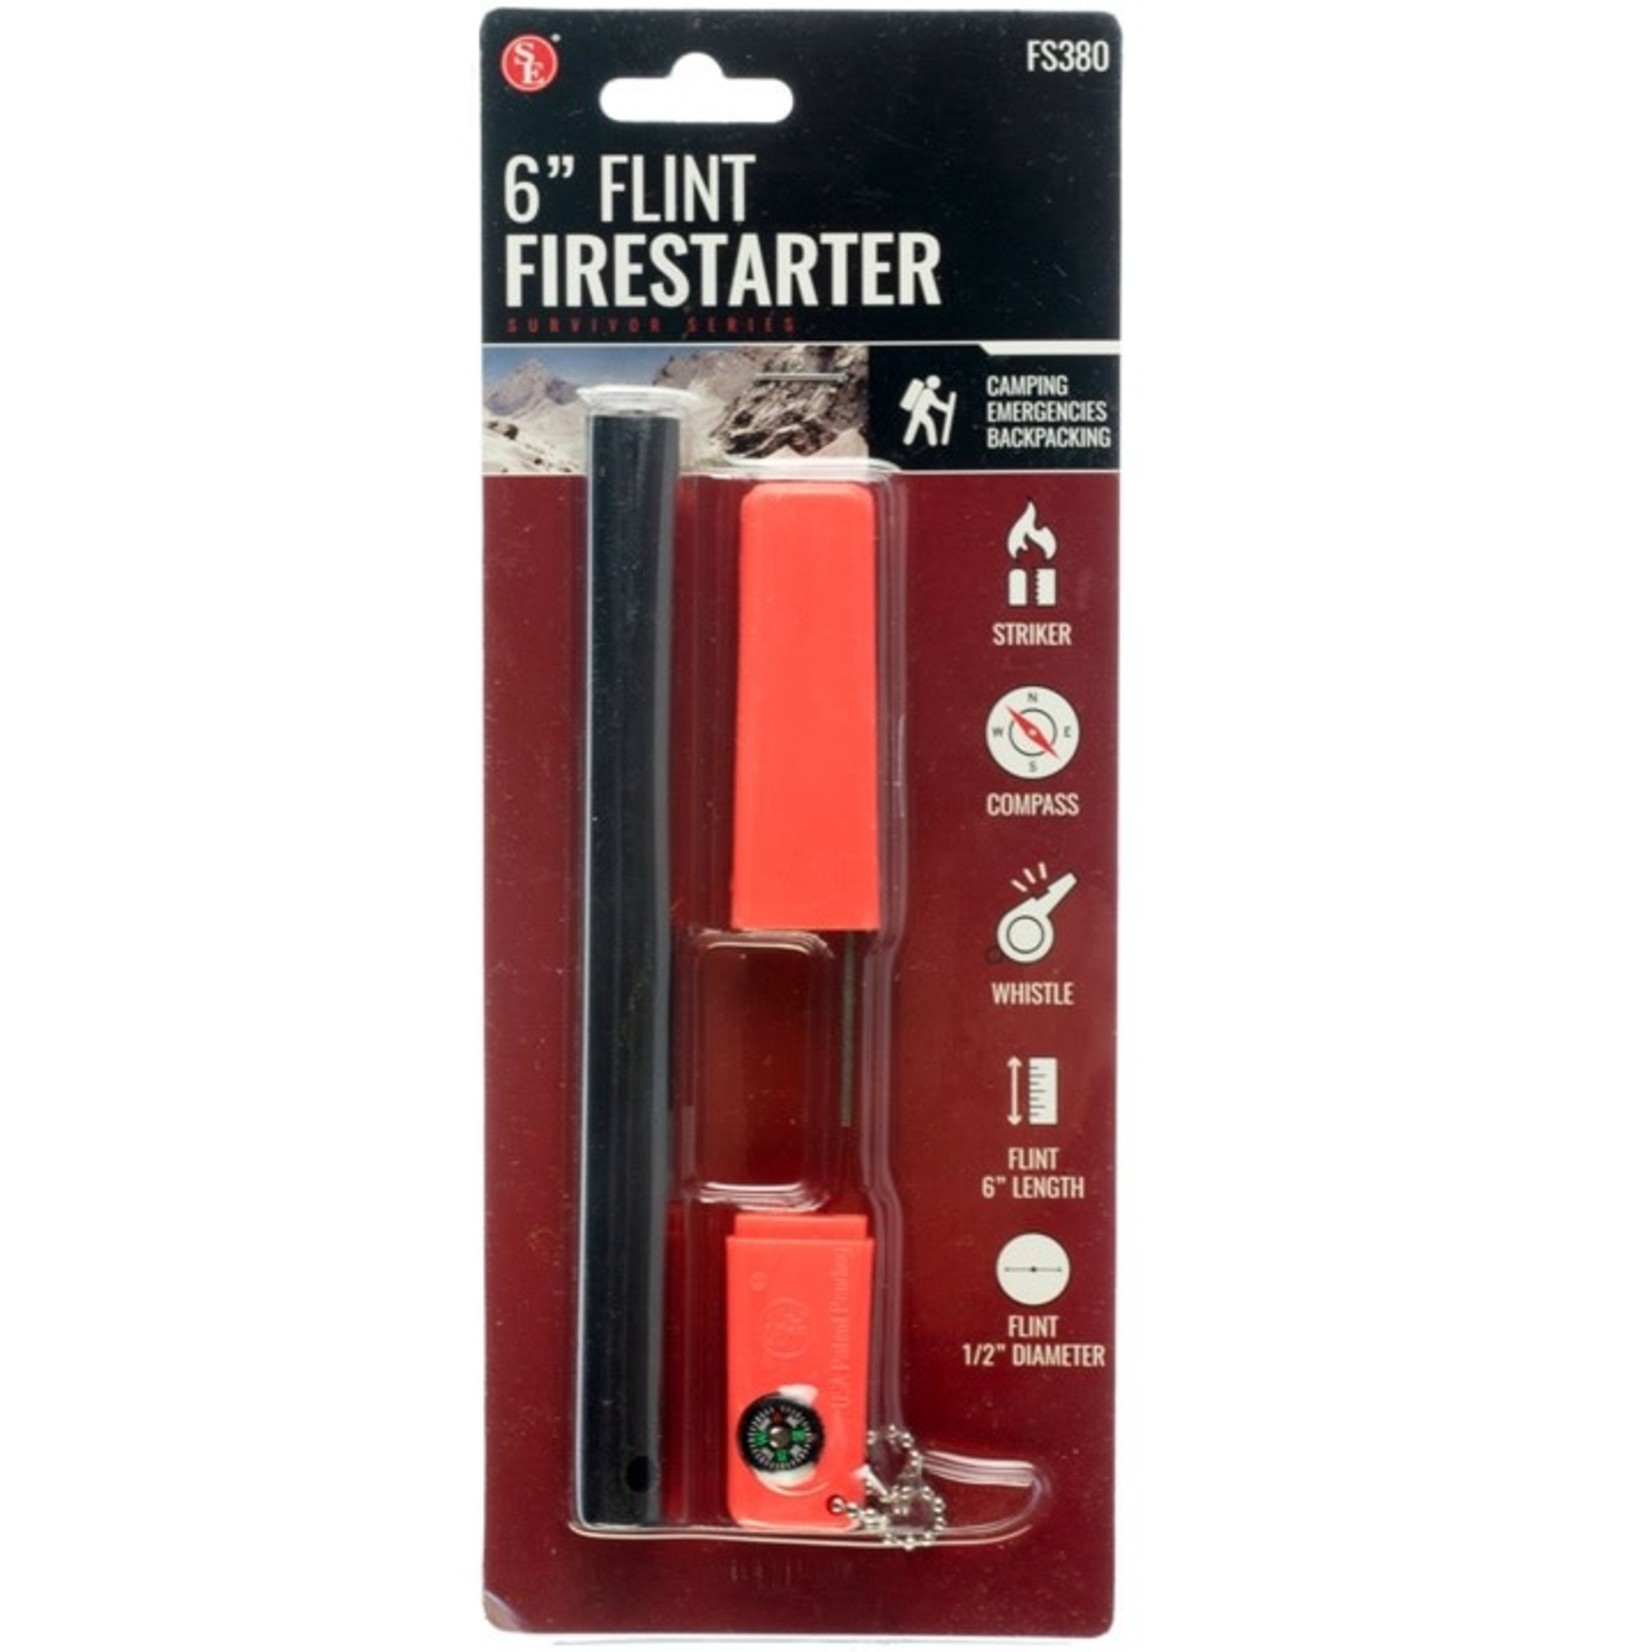 Sona SE 6" Flint Fire Starter